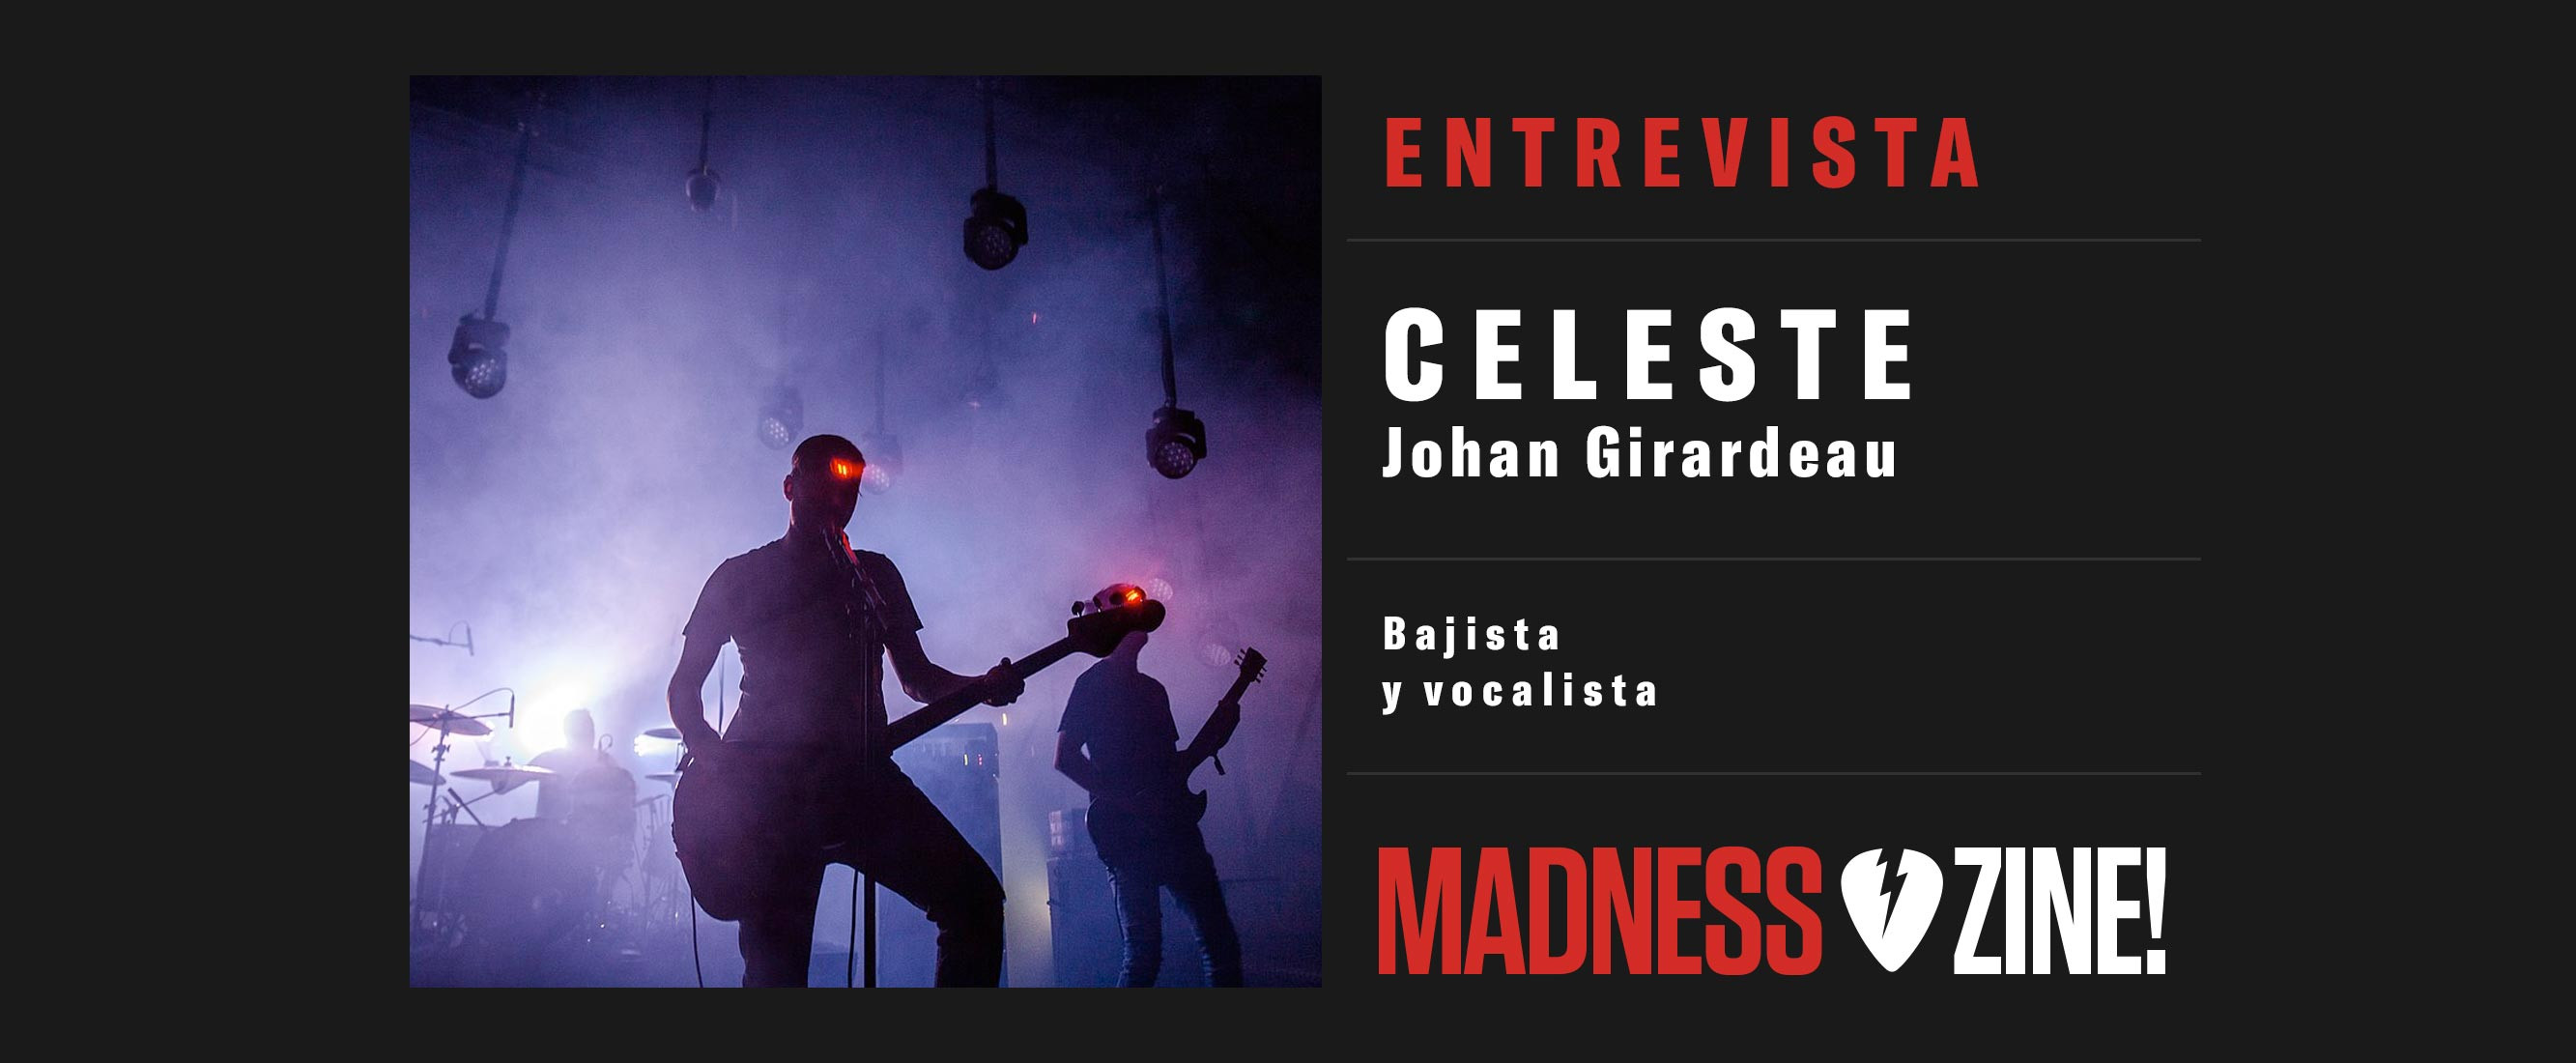 Entrevista: Celeste 'Johan Girardeau (bajista y vocalista)'